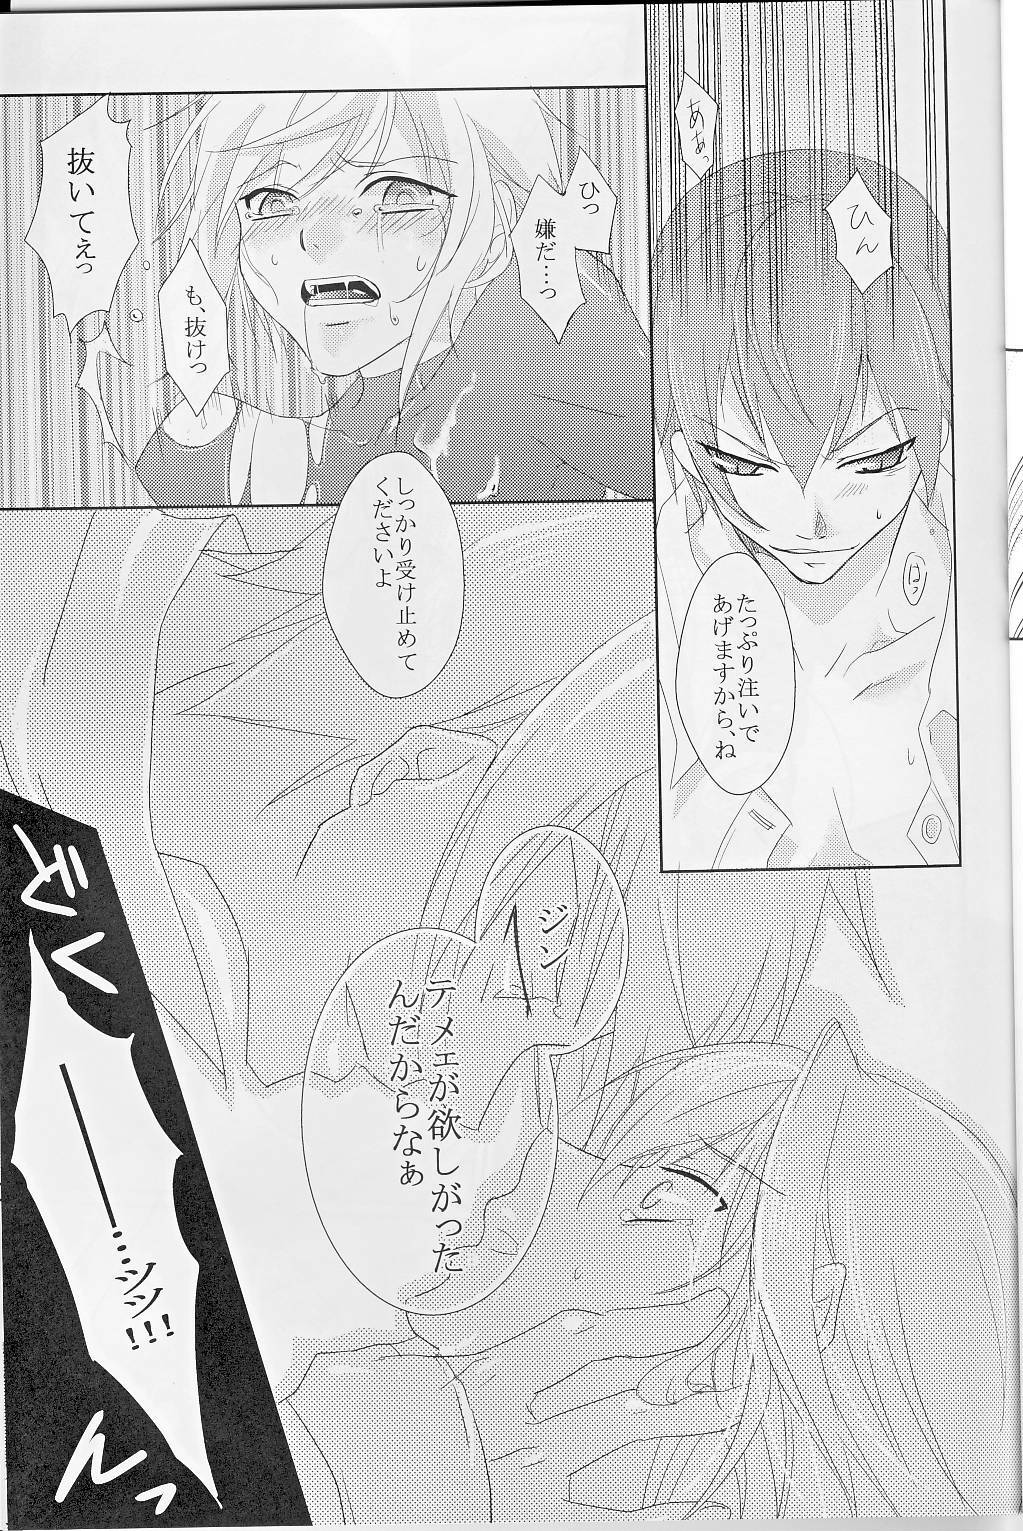 [smat. (Akatsuki Tomato)] Silly (BLAZBLUE) page 28 full